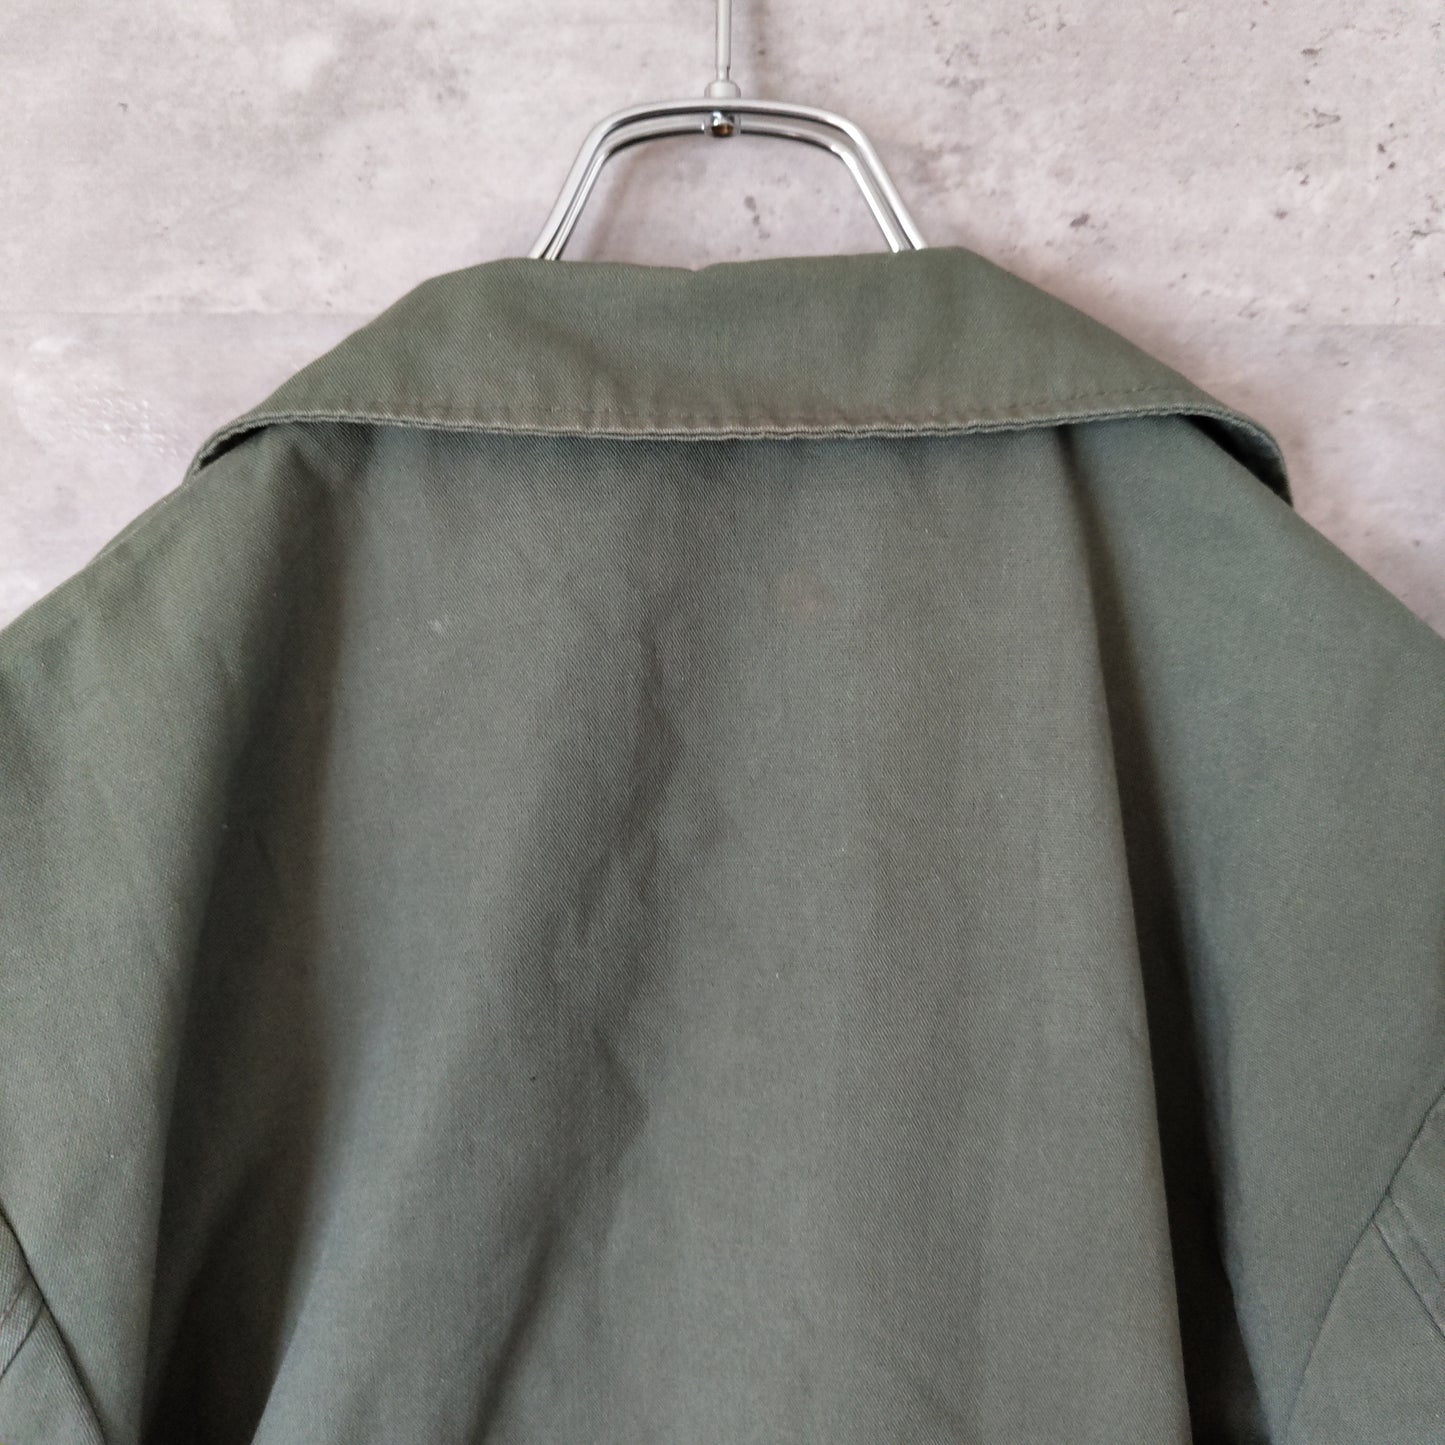 [magasins bleus] vintage jacket, made in France